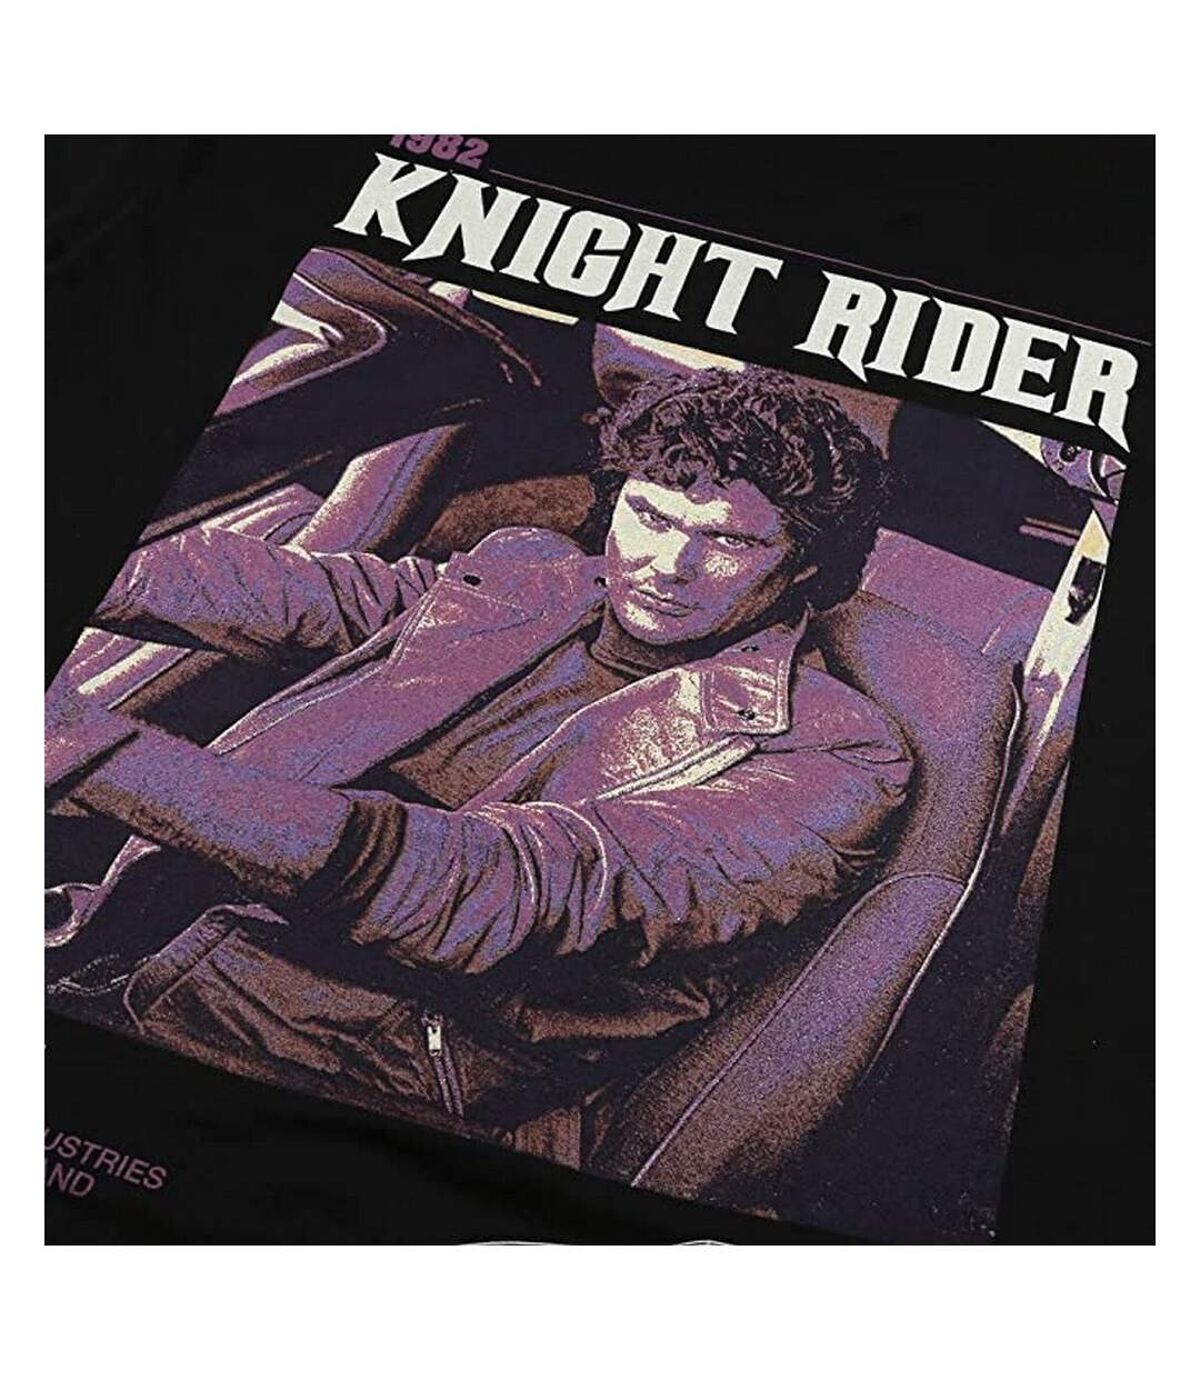 Knight Rider T-Shirt Mens 1982 (Noir) - UTTV1066